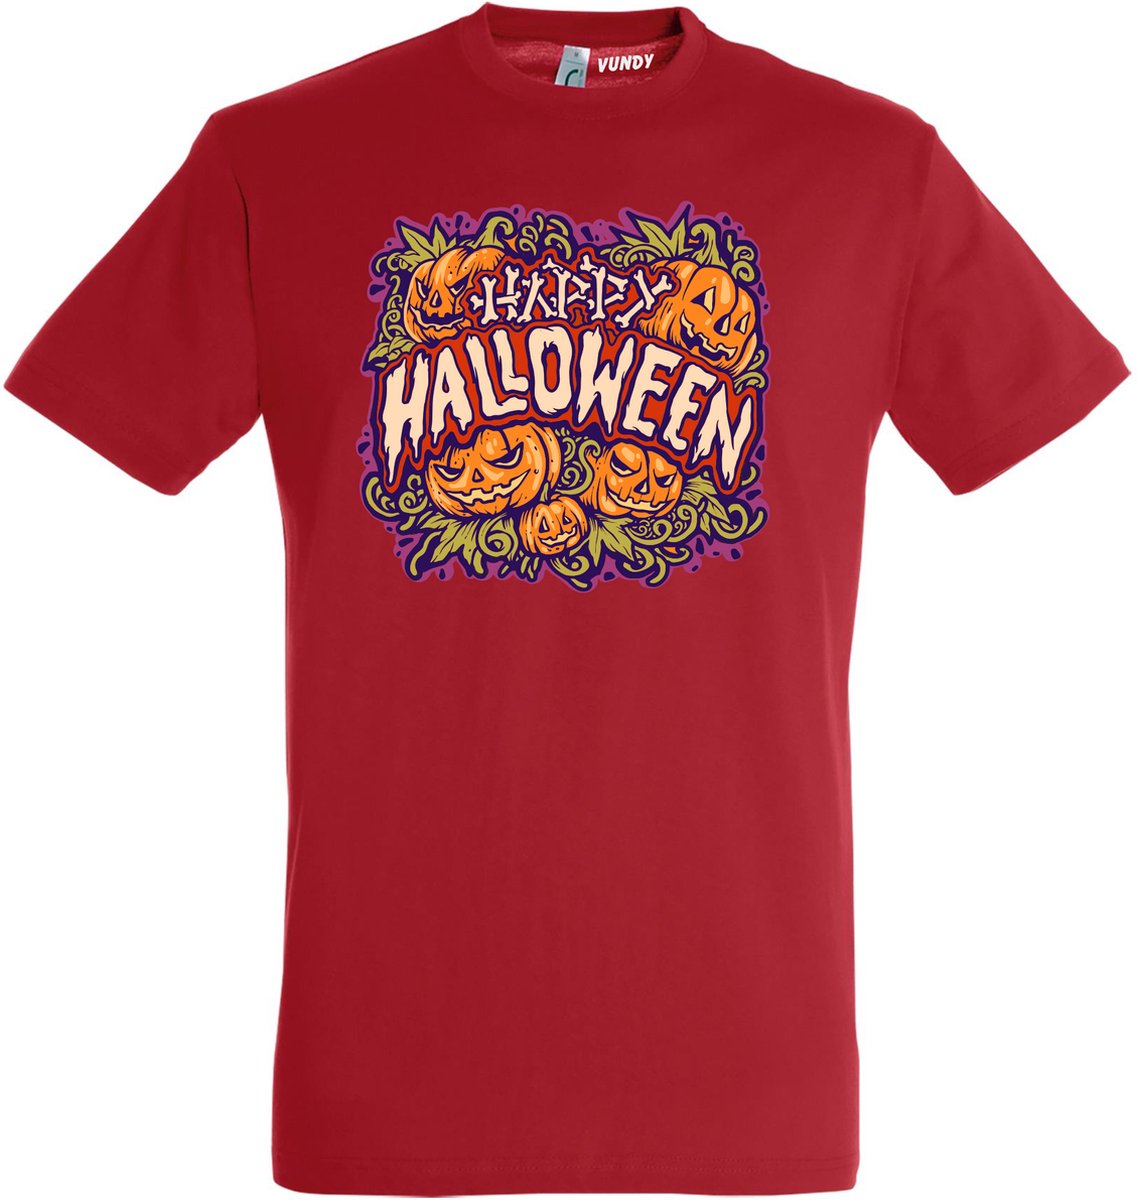 T-shirt Happy Halloween pompoen | Halloween kostuum kind dames heren | verkleedkleren meisje jongen | Rood | maat XXL